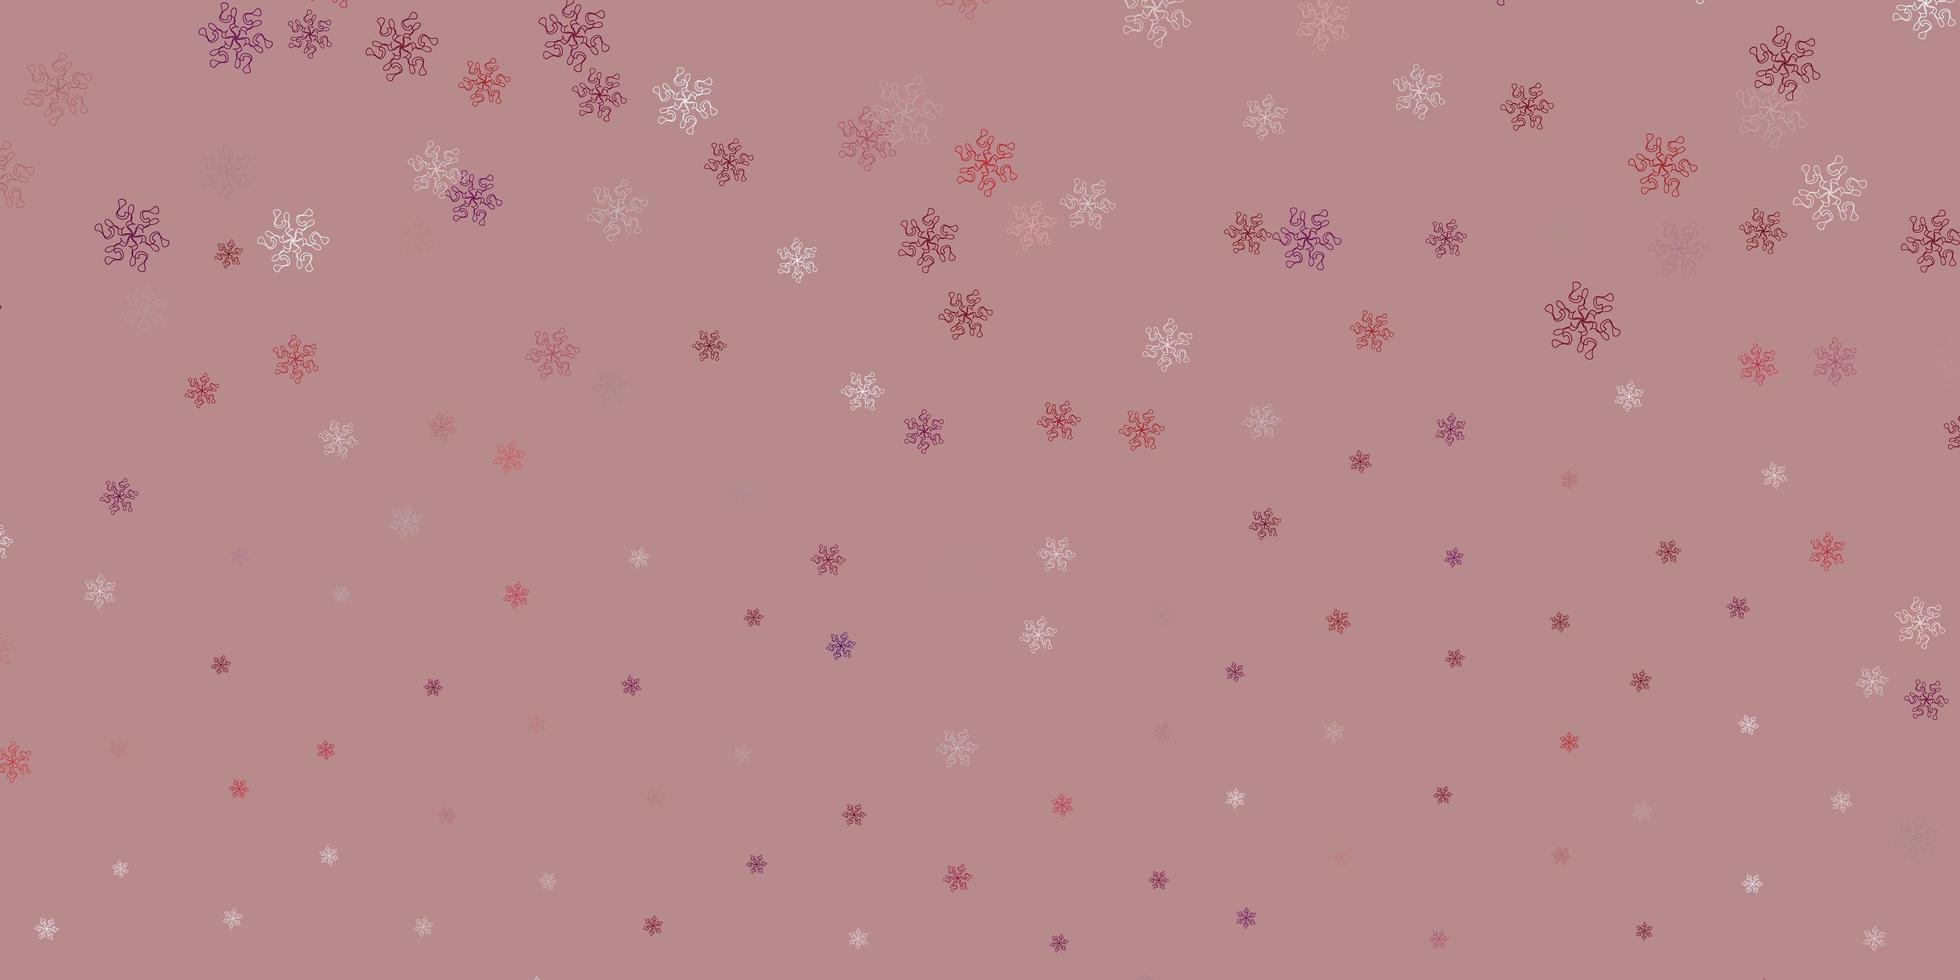 Fondo de doodle de vector púrpura claro con flores.